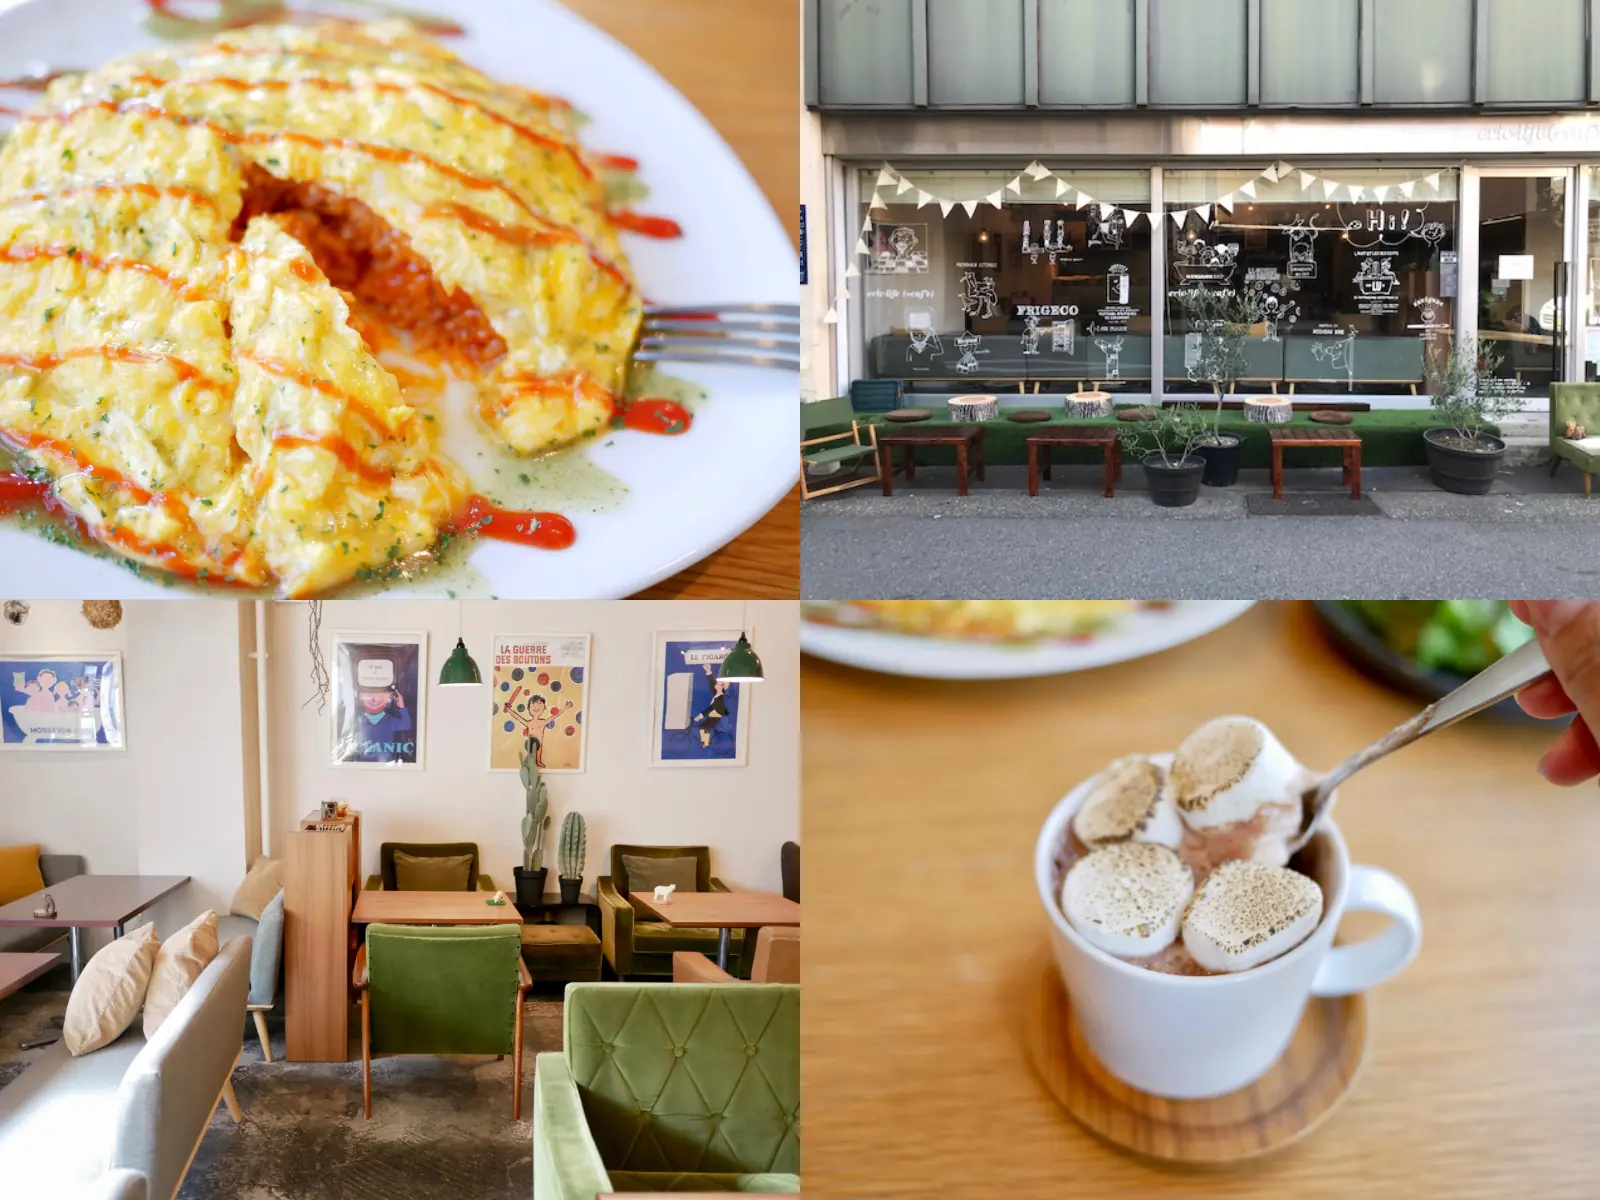 ゆったり寛げる素敵空間。大須で愛され続けるカフェ「eric-life / cafe molly」